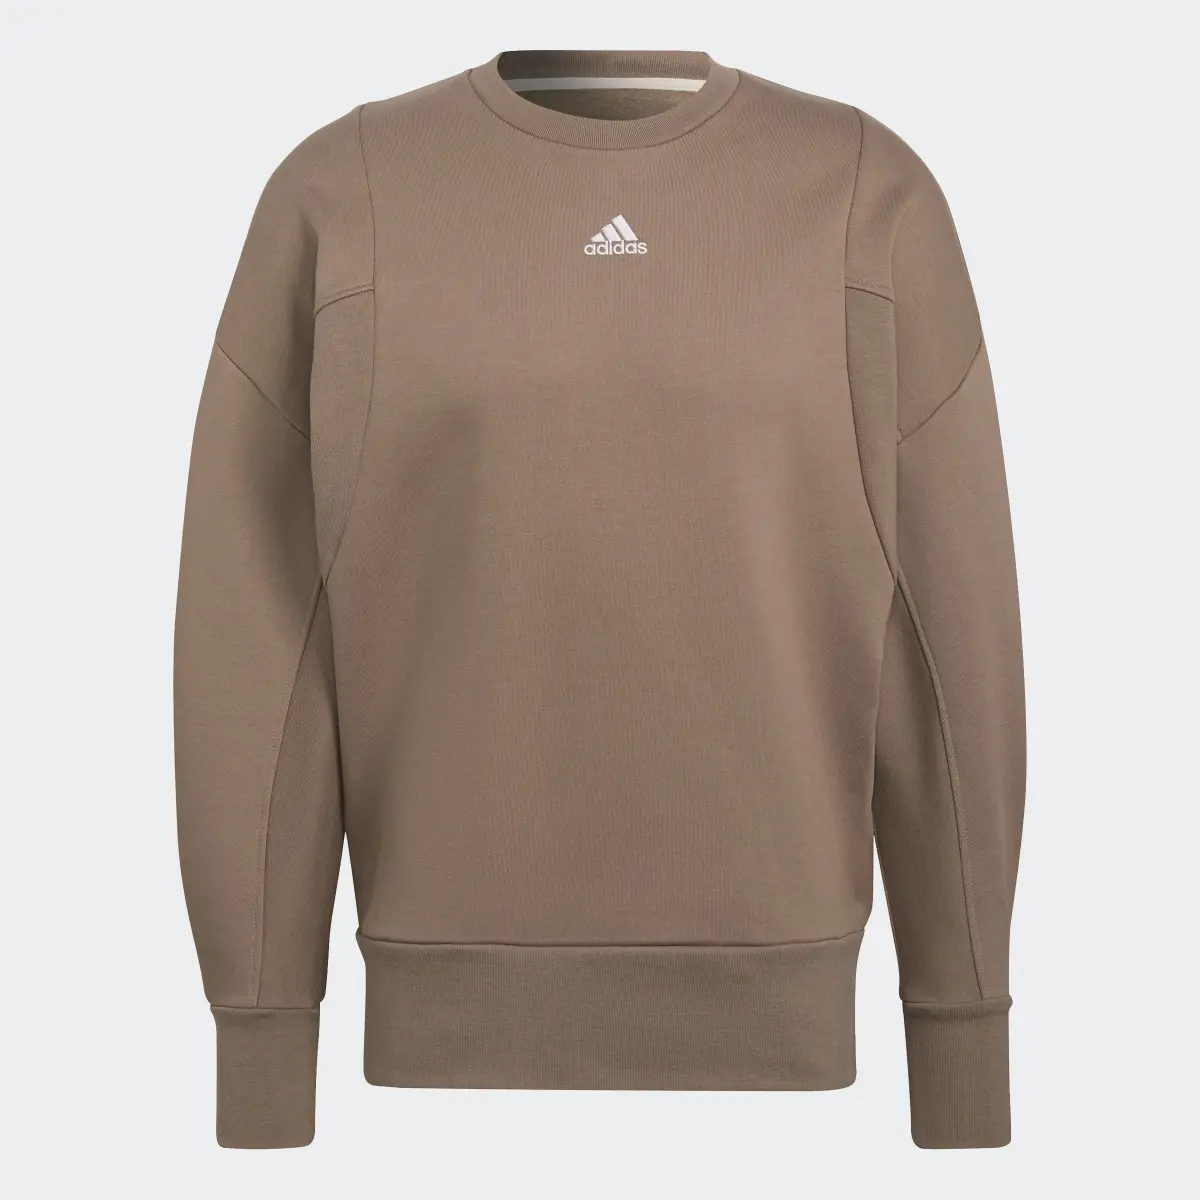 Adidas Studio Lounge Fleece Sweatshirt. 1